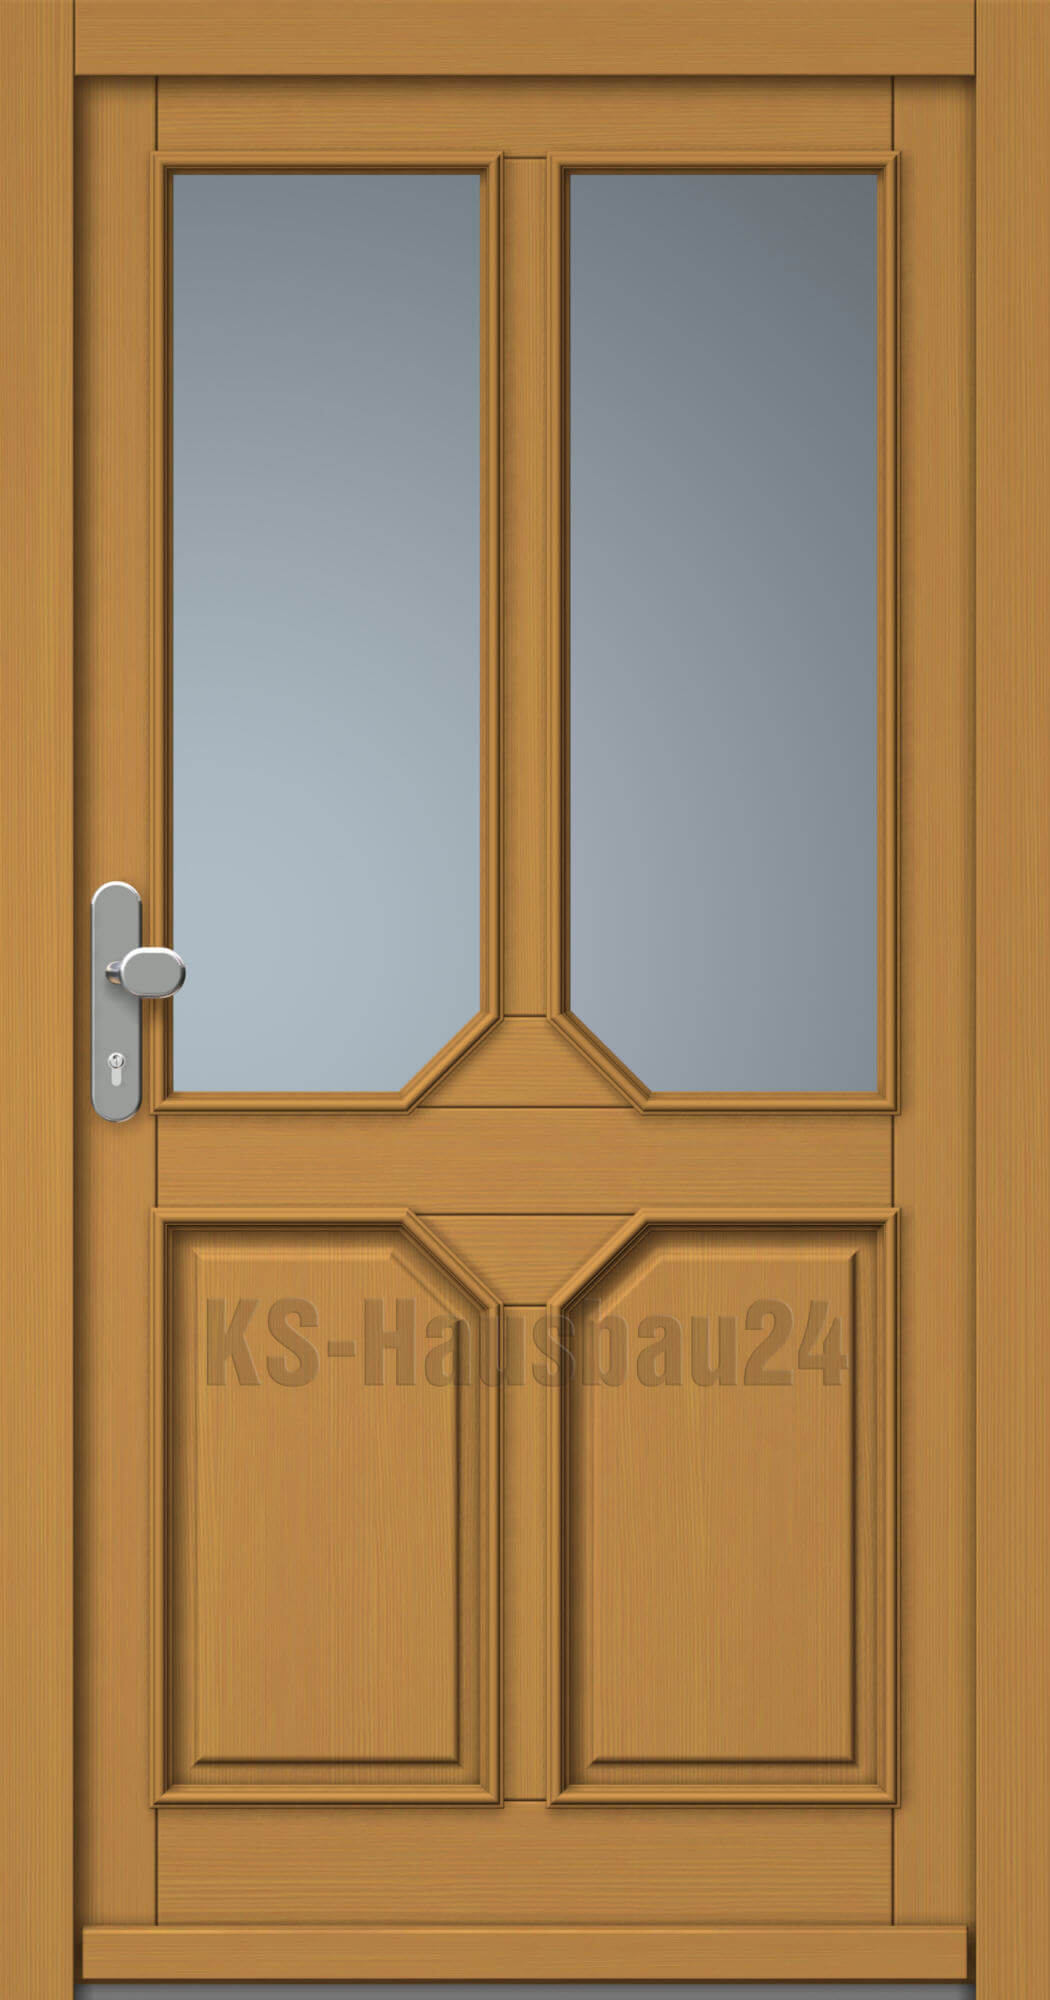 Haustüren Holz Modell KS 10